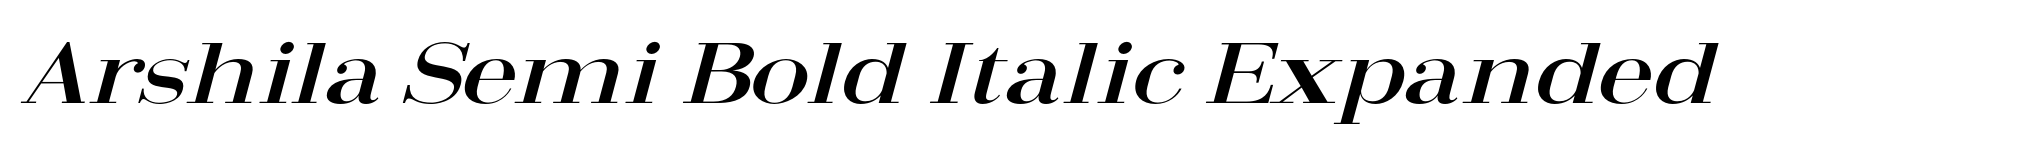 Arshila Semi Bold Italic Expanded image